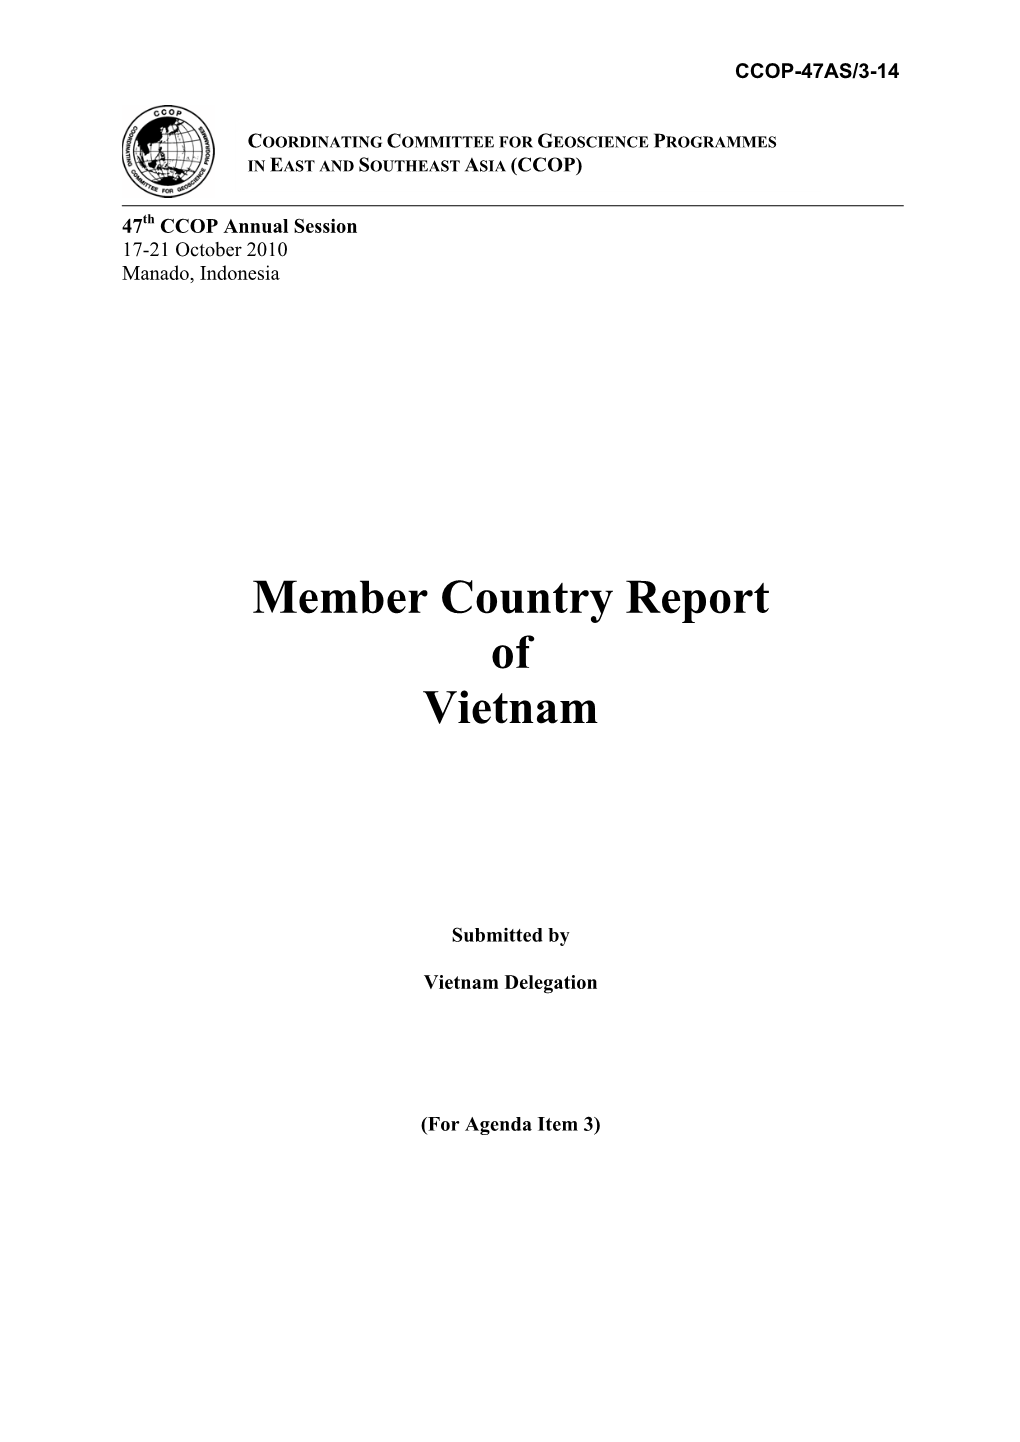 Member Country Report of Vietnam